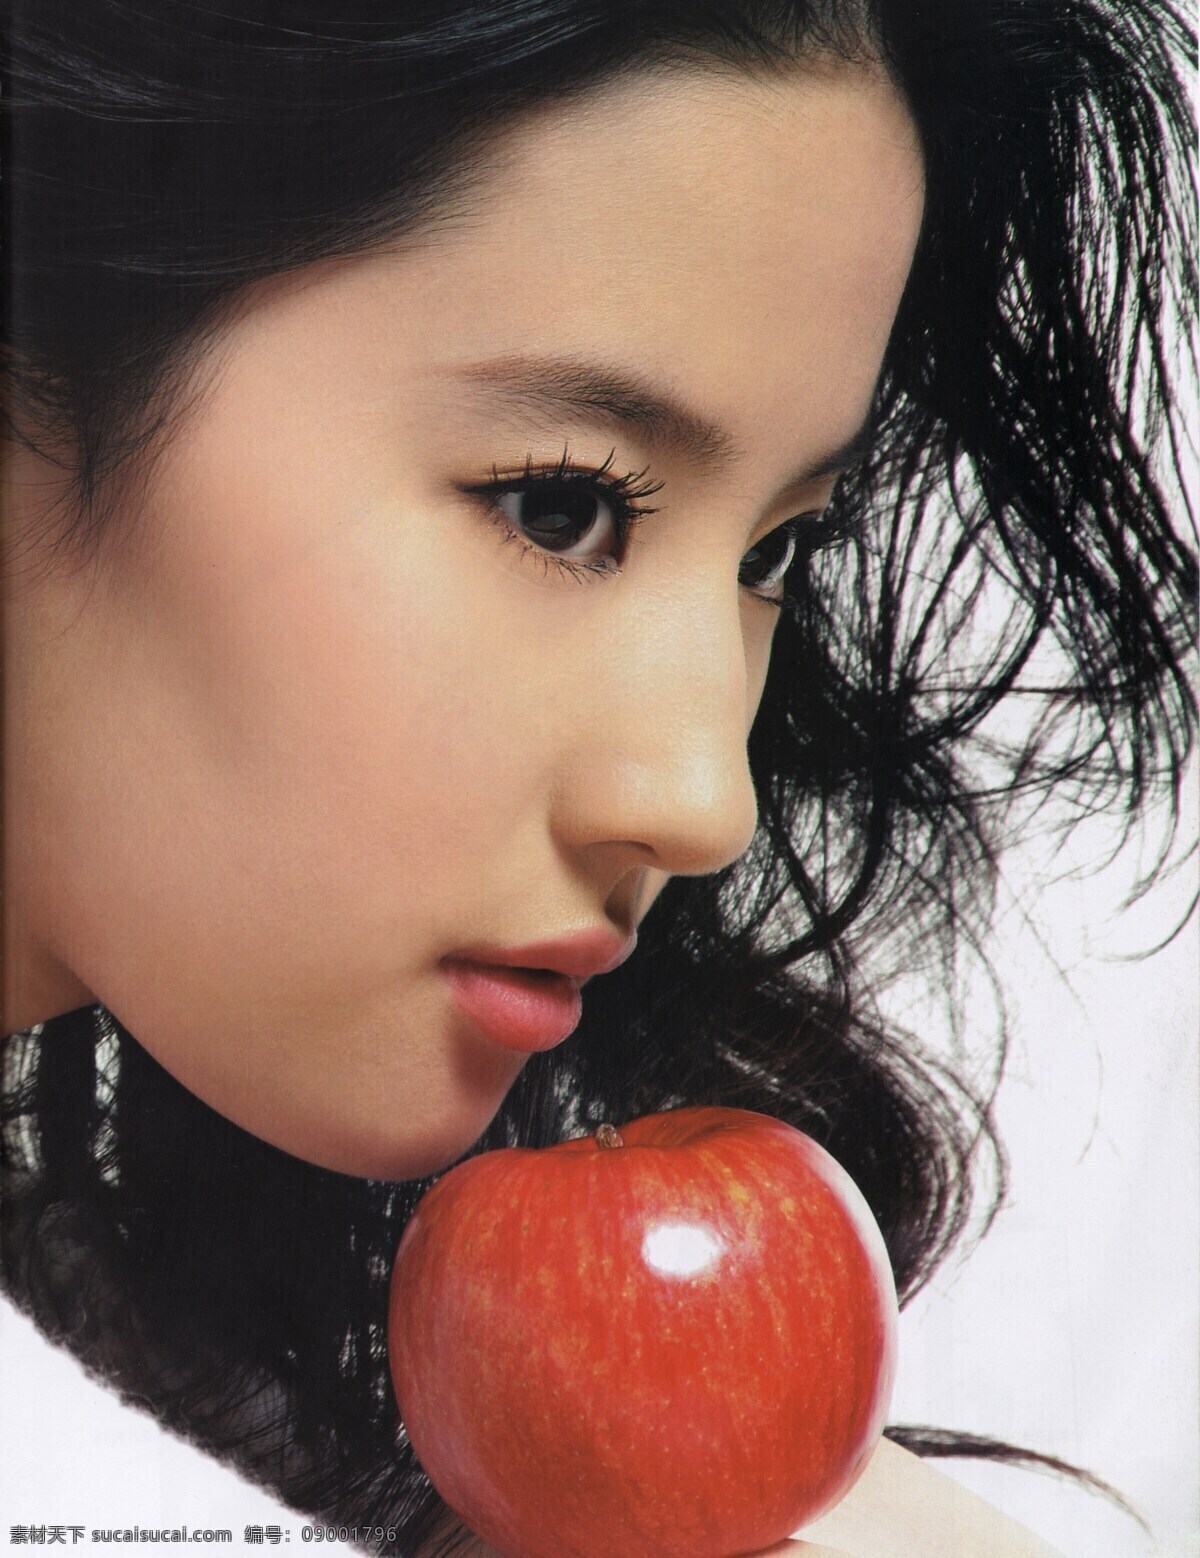 刘亦菲 苹果 美女 女人 性感美女 人物 人物摄影 人物素材 生活人物 职业人物 模特 明星 演员 明星图片 人物图片